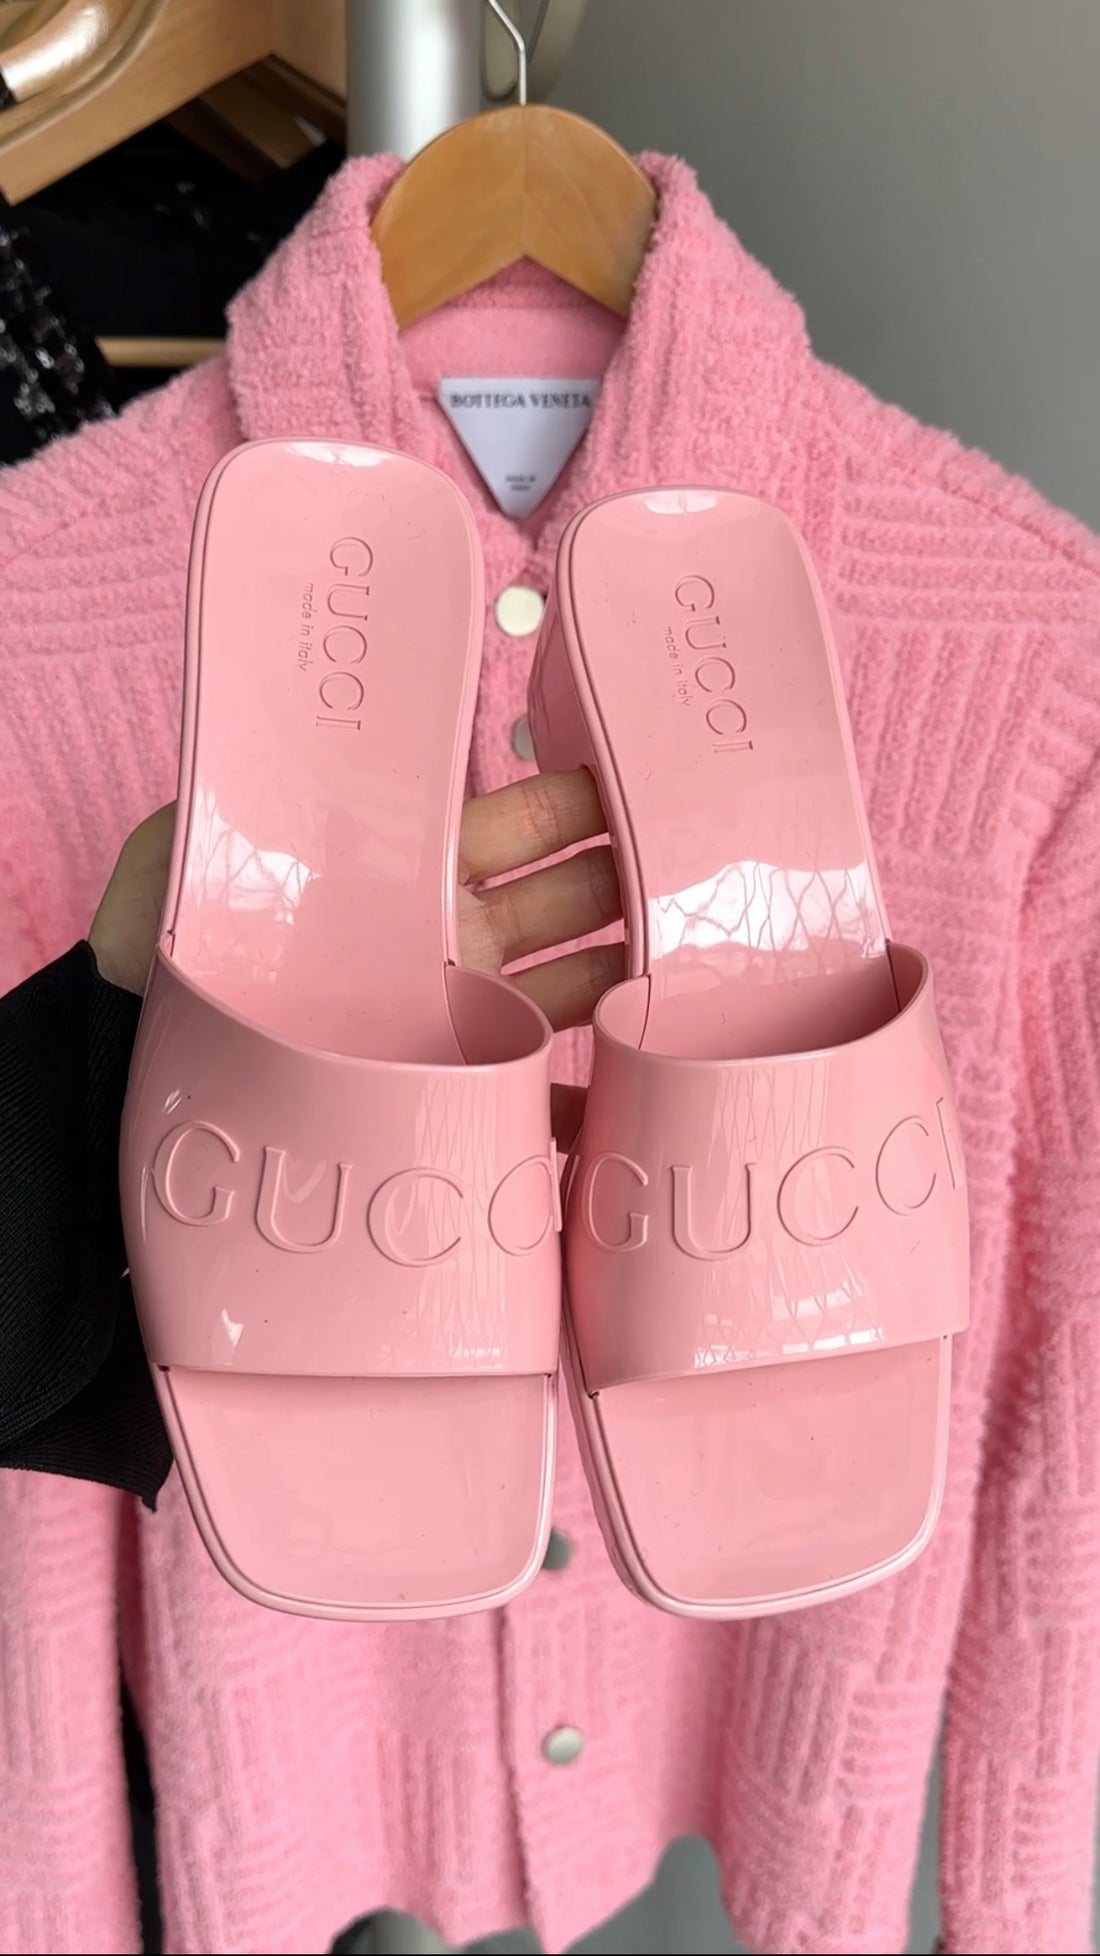 Gucci Light Pink Rubber Block Heel Sandals - 36 / 6.5